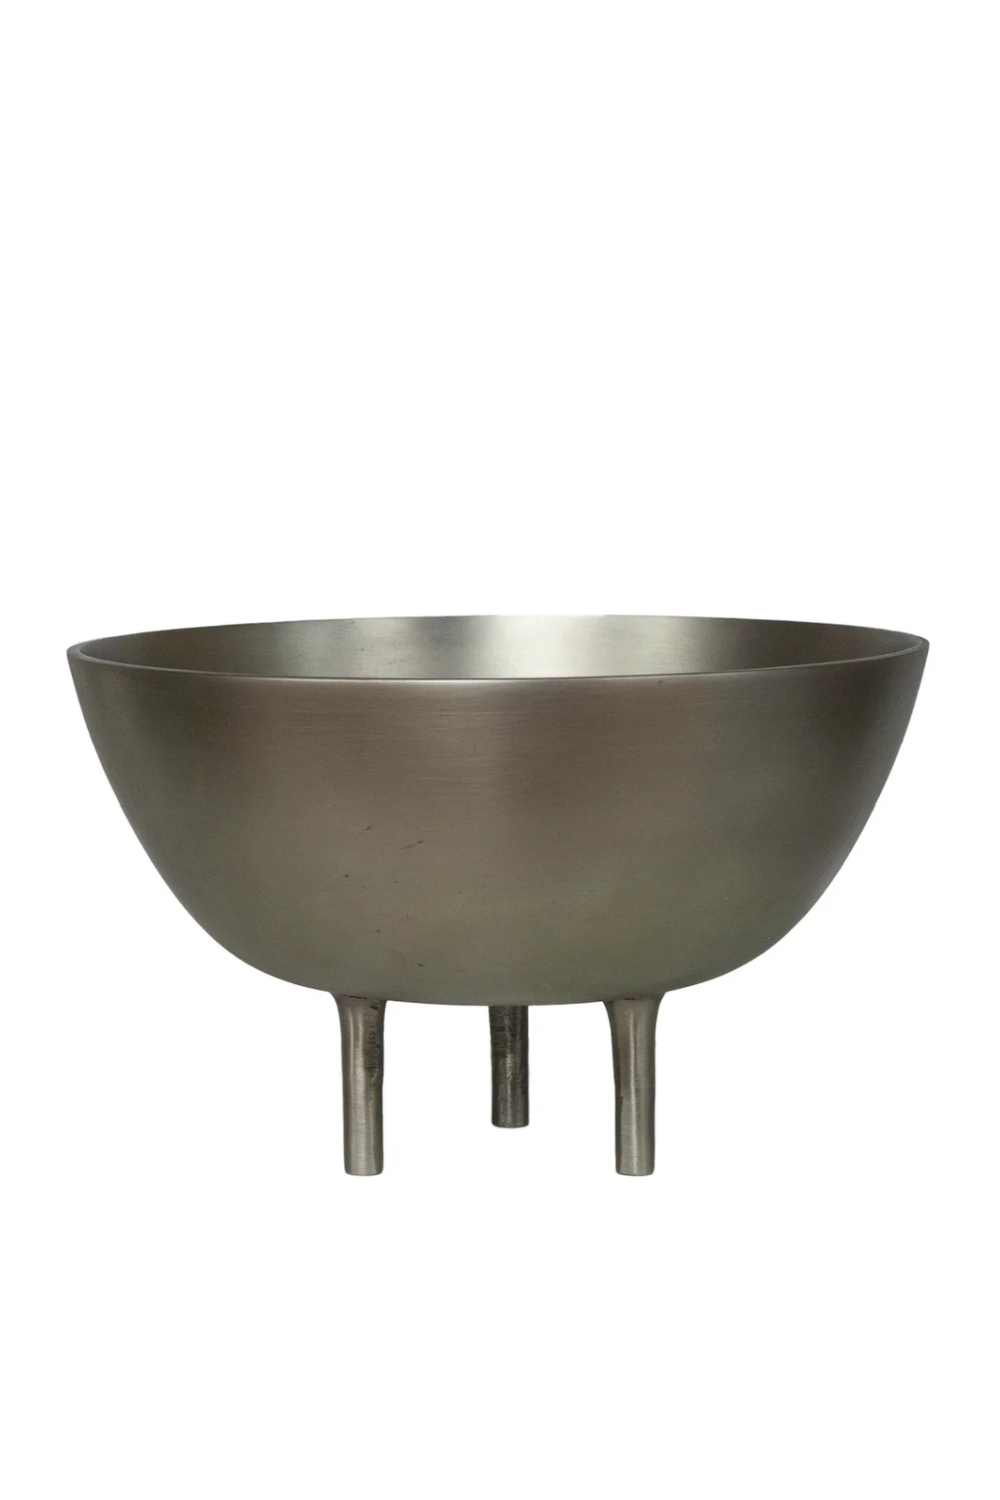 Black Aluminum Bowl Centerpiece | Dome Deco | Oroa.com